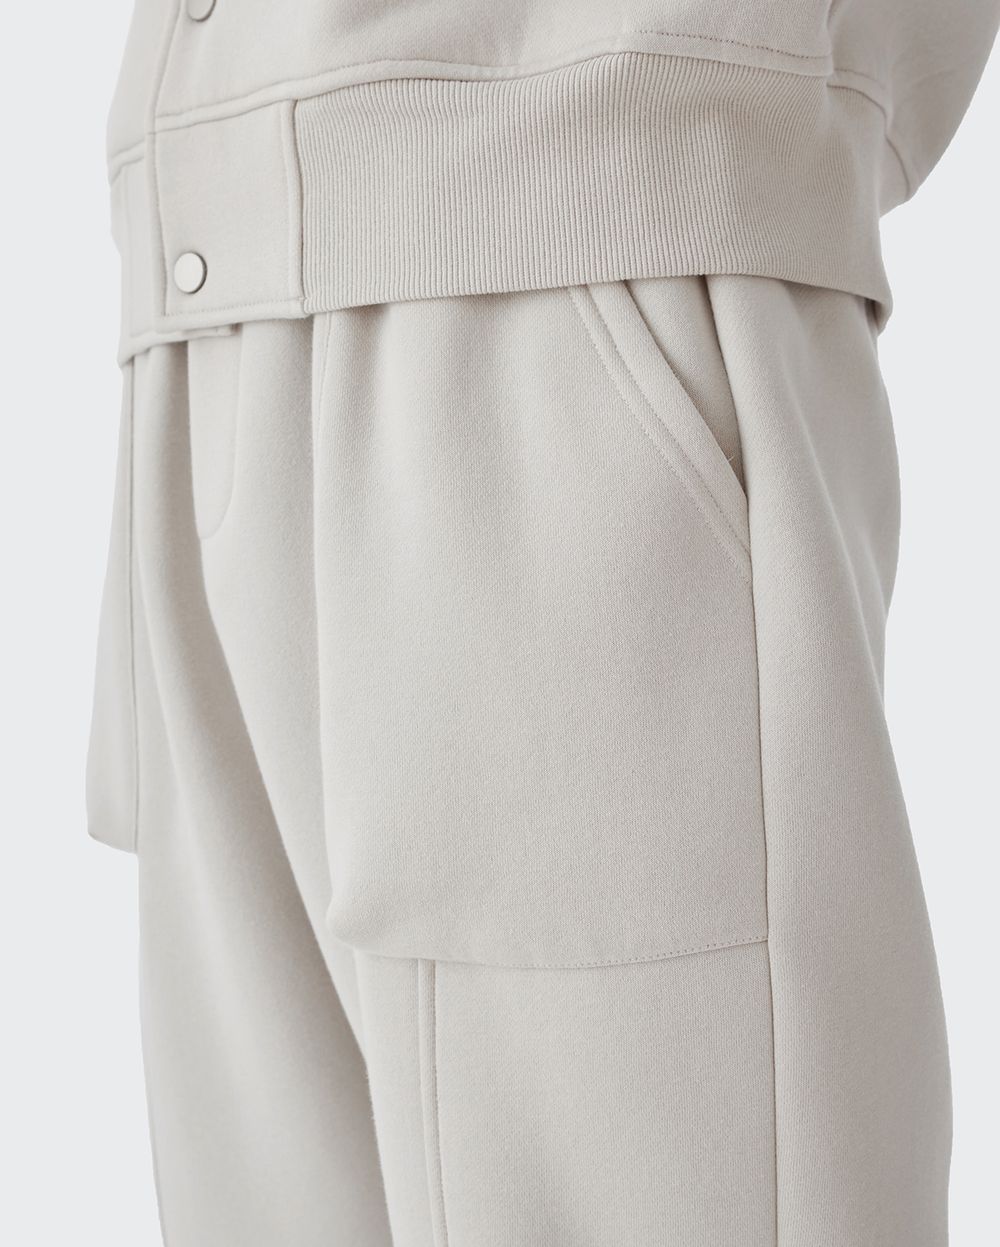 Klassische Fleece-Hose mit einfarbigem Knöchelband